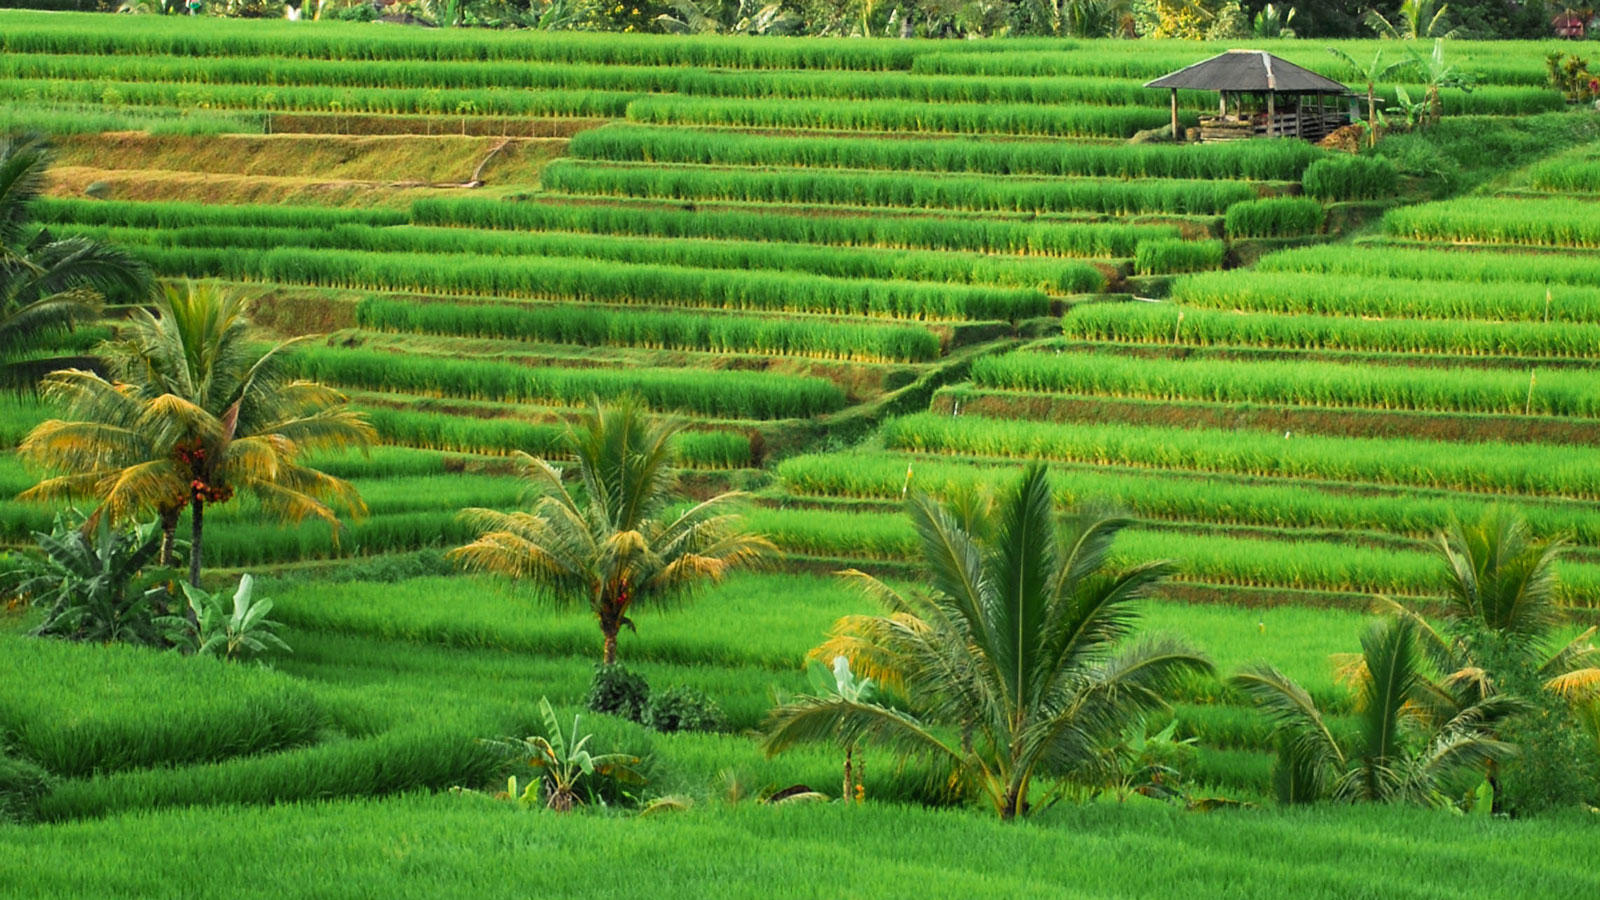 Bali Rice Terraces - Bali Tour - Bali Guide